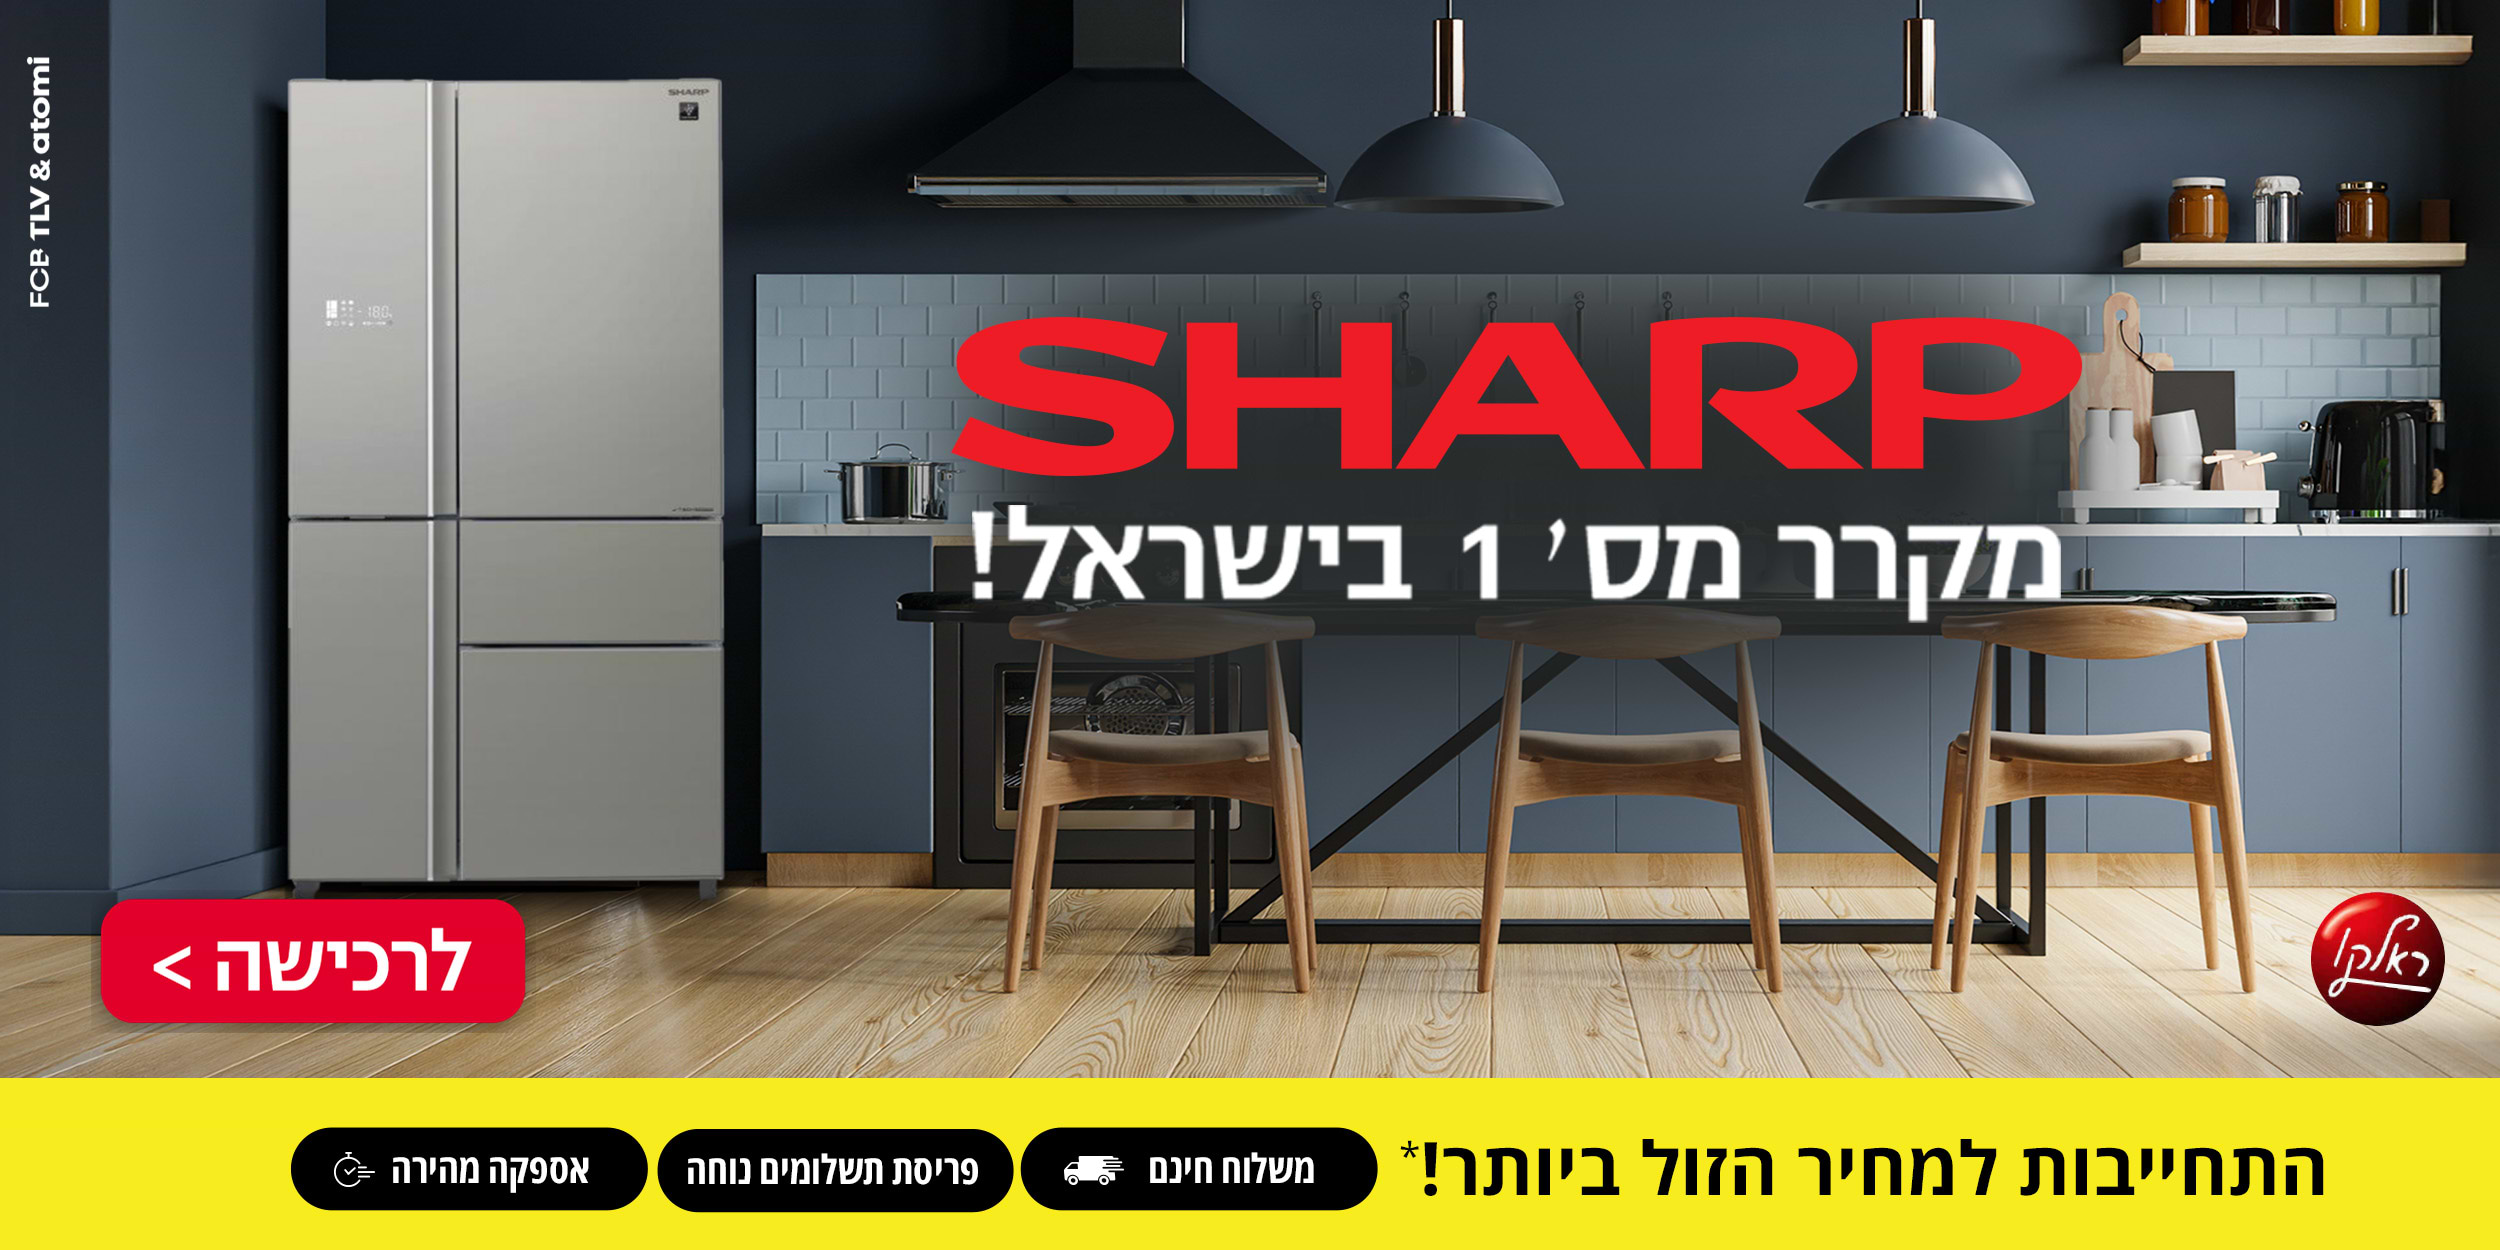 SHARP מקרר מס' 1 בישראל! התחייבות למחיר הזול ביותר! משלוח חינם, פריסת תשלומים נוחה ואספקה נוחה.